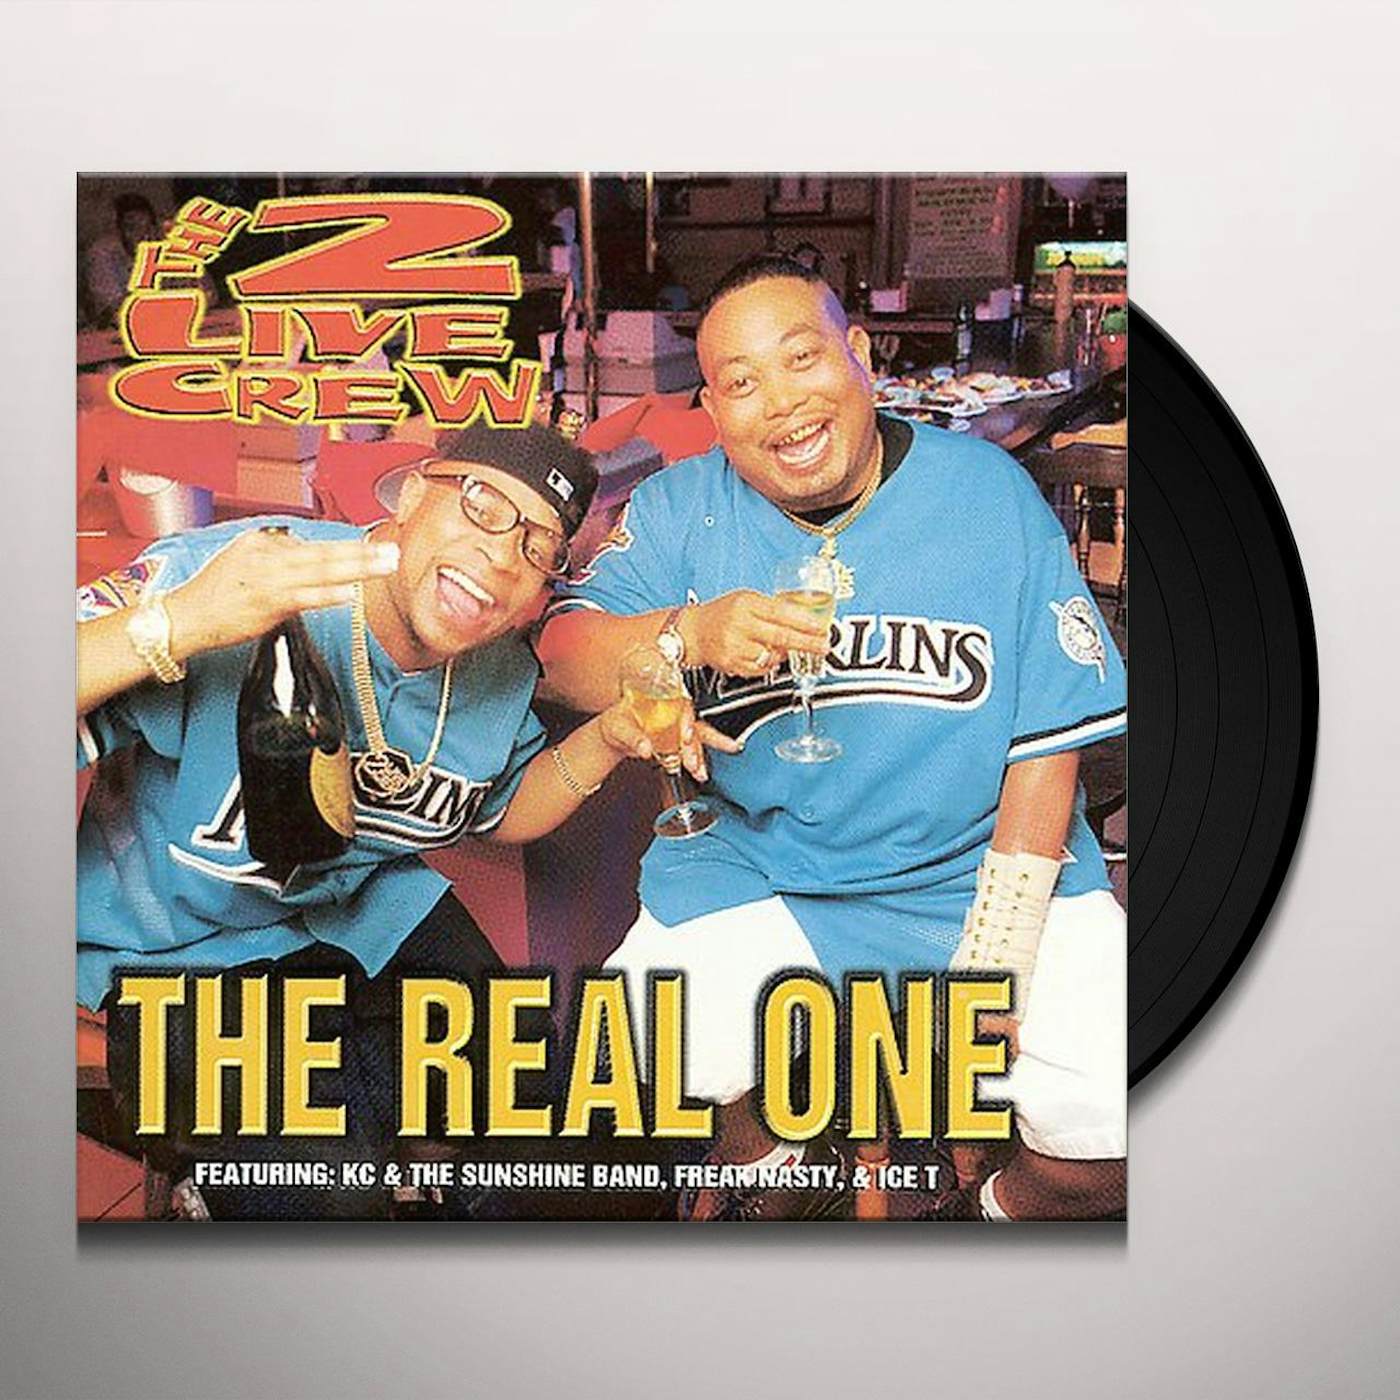 2 LIVE CREW REAL ONE Vinyl Record